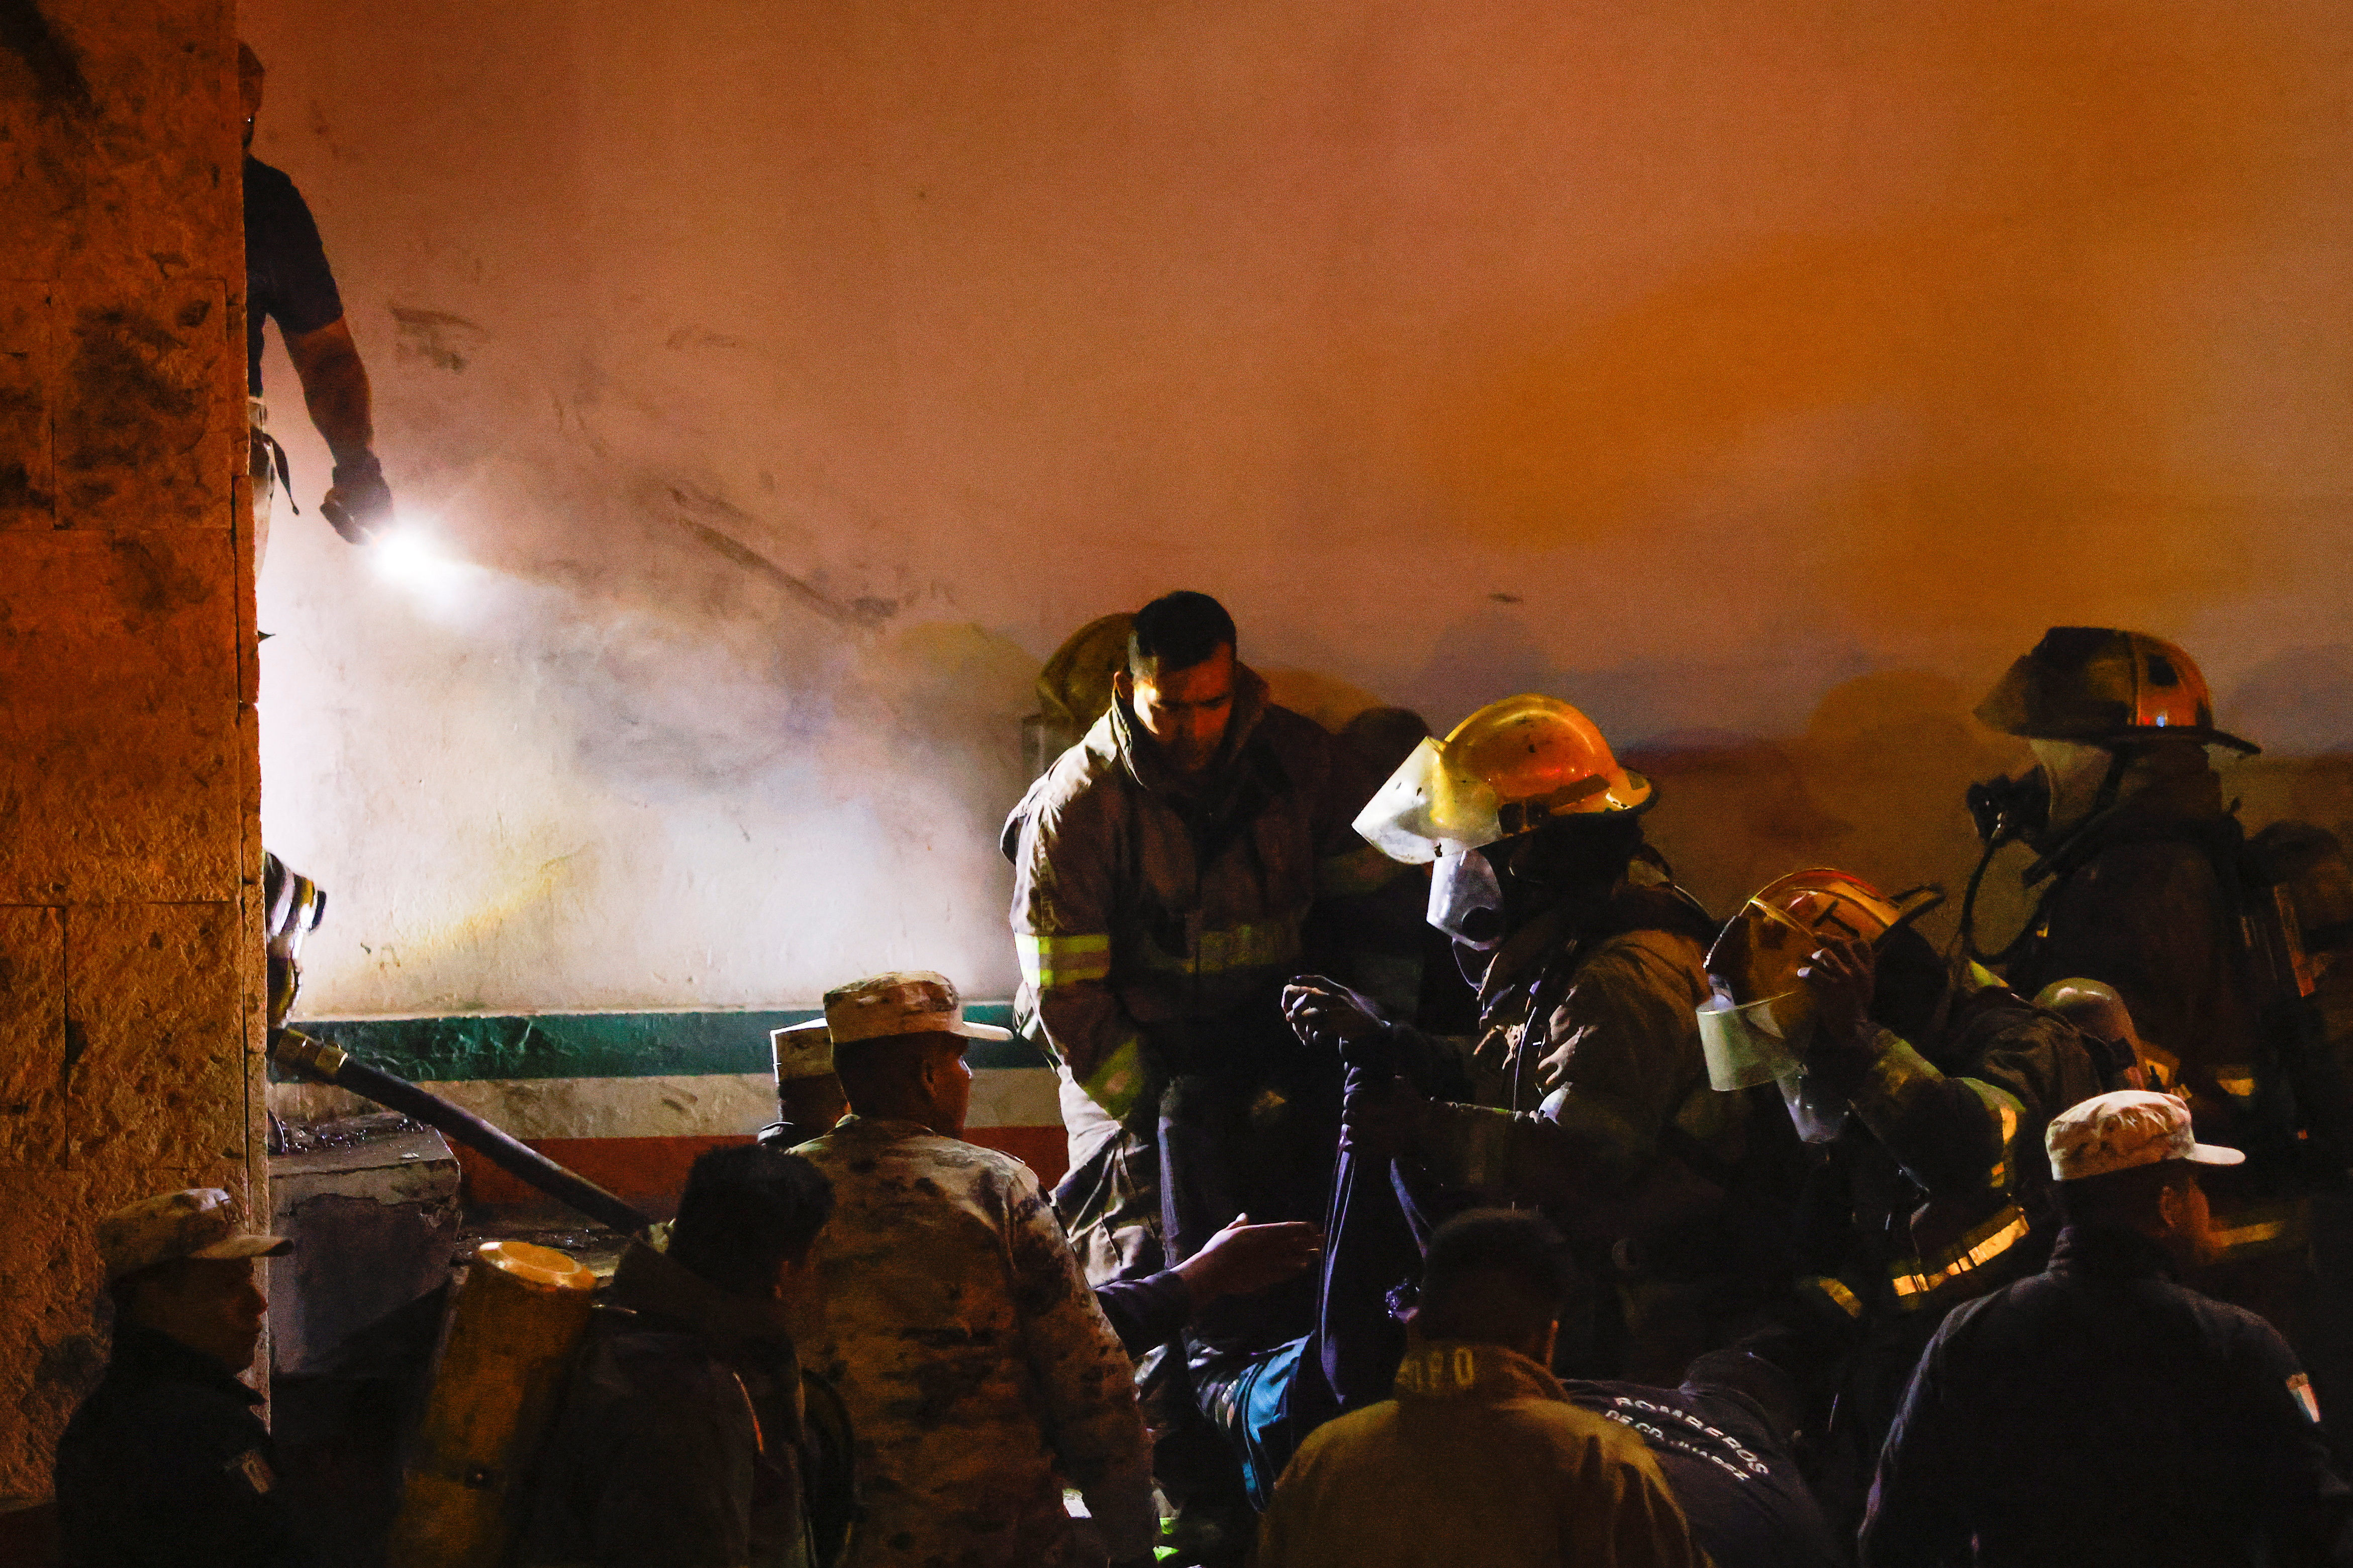 Autoridades confirmaron que el incendio habría sido provocado tras una protesta migrante. (REUTERS/Jose Luis Gonzalez)